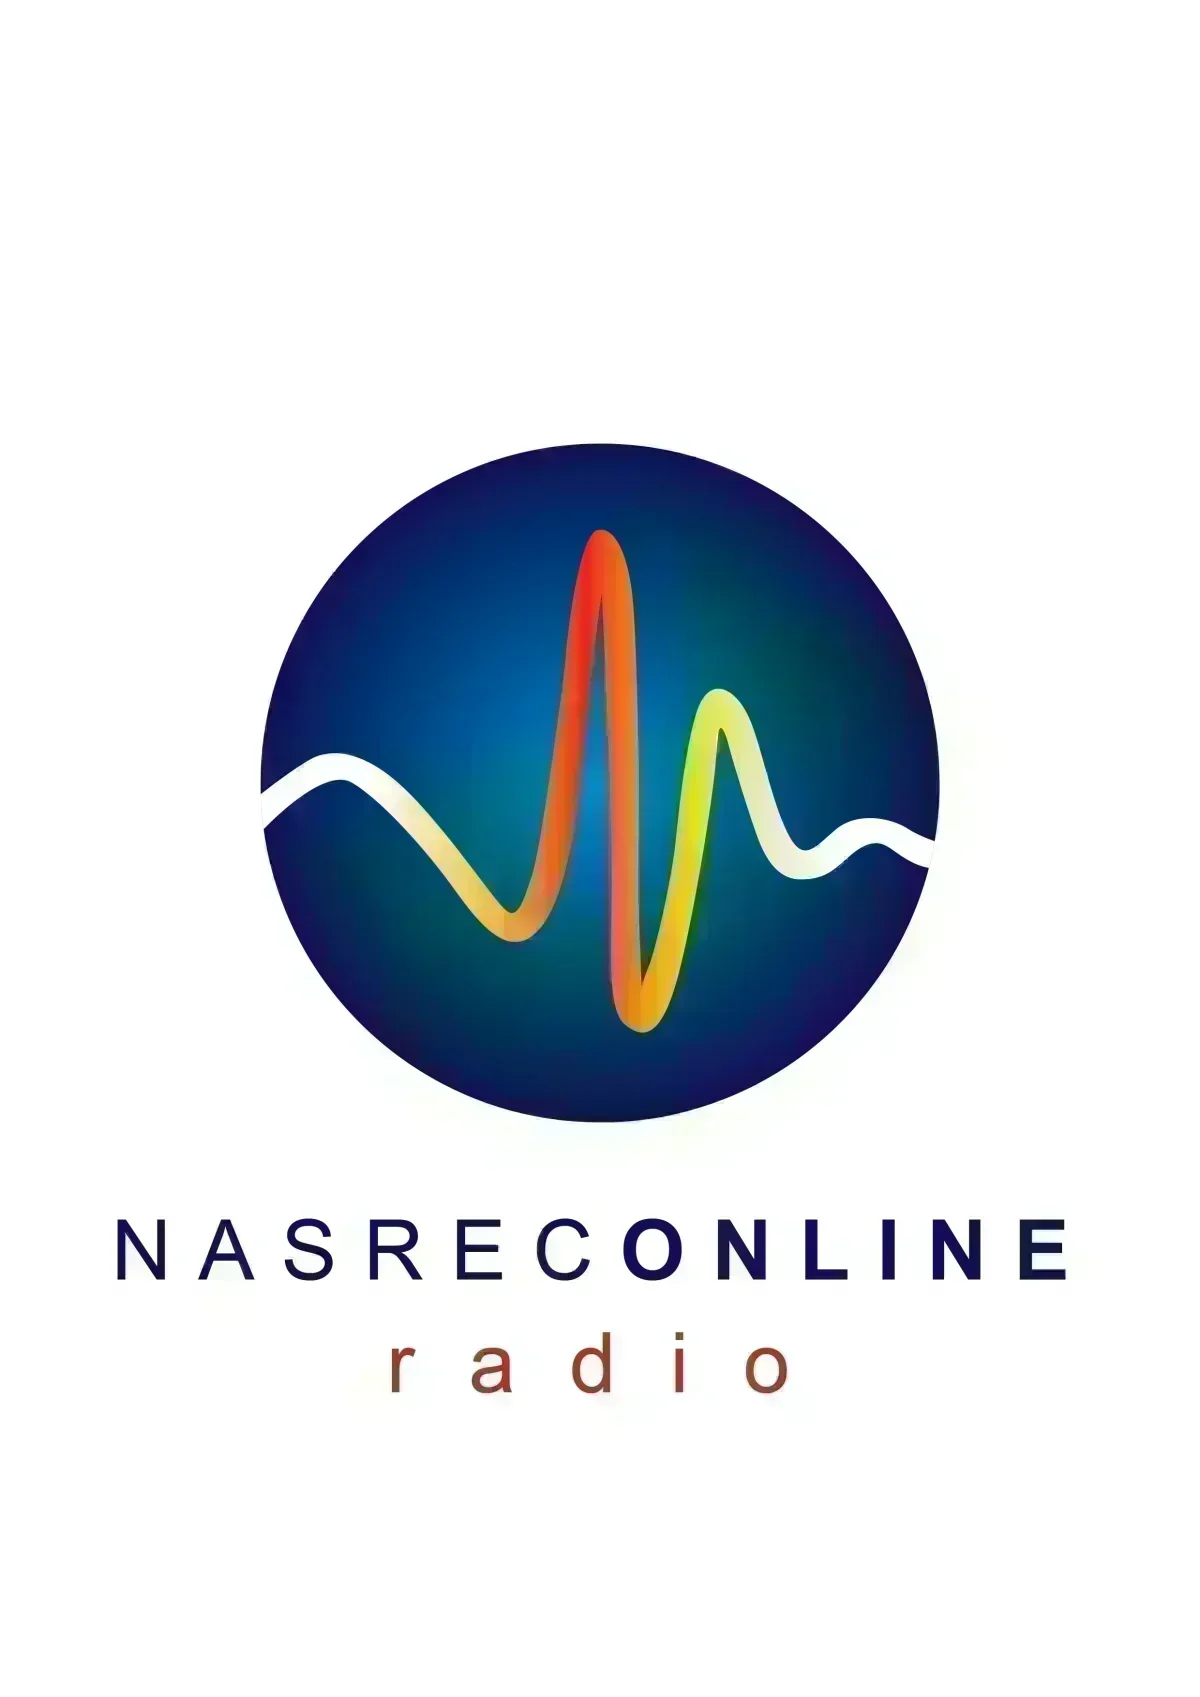 Nasrec Online Radio